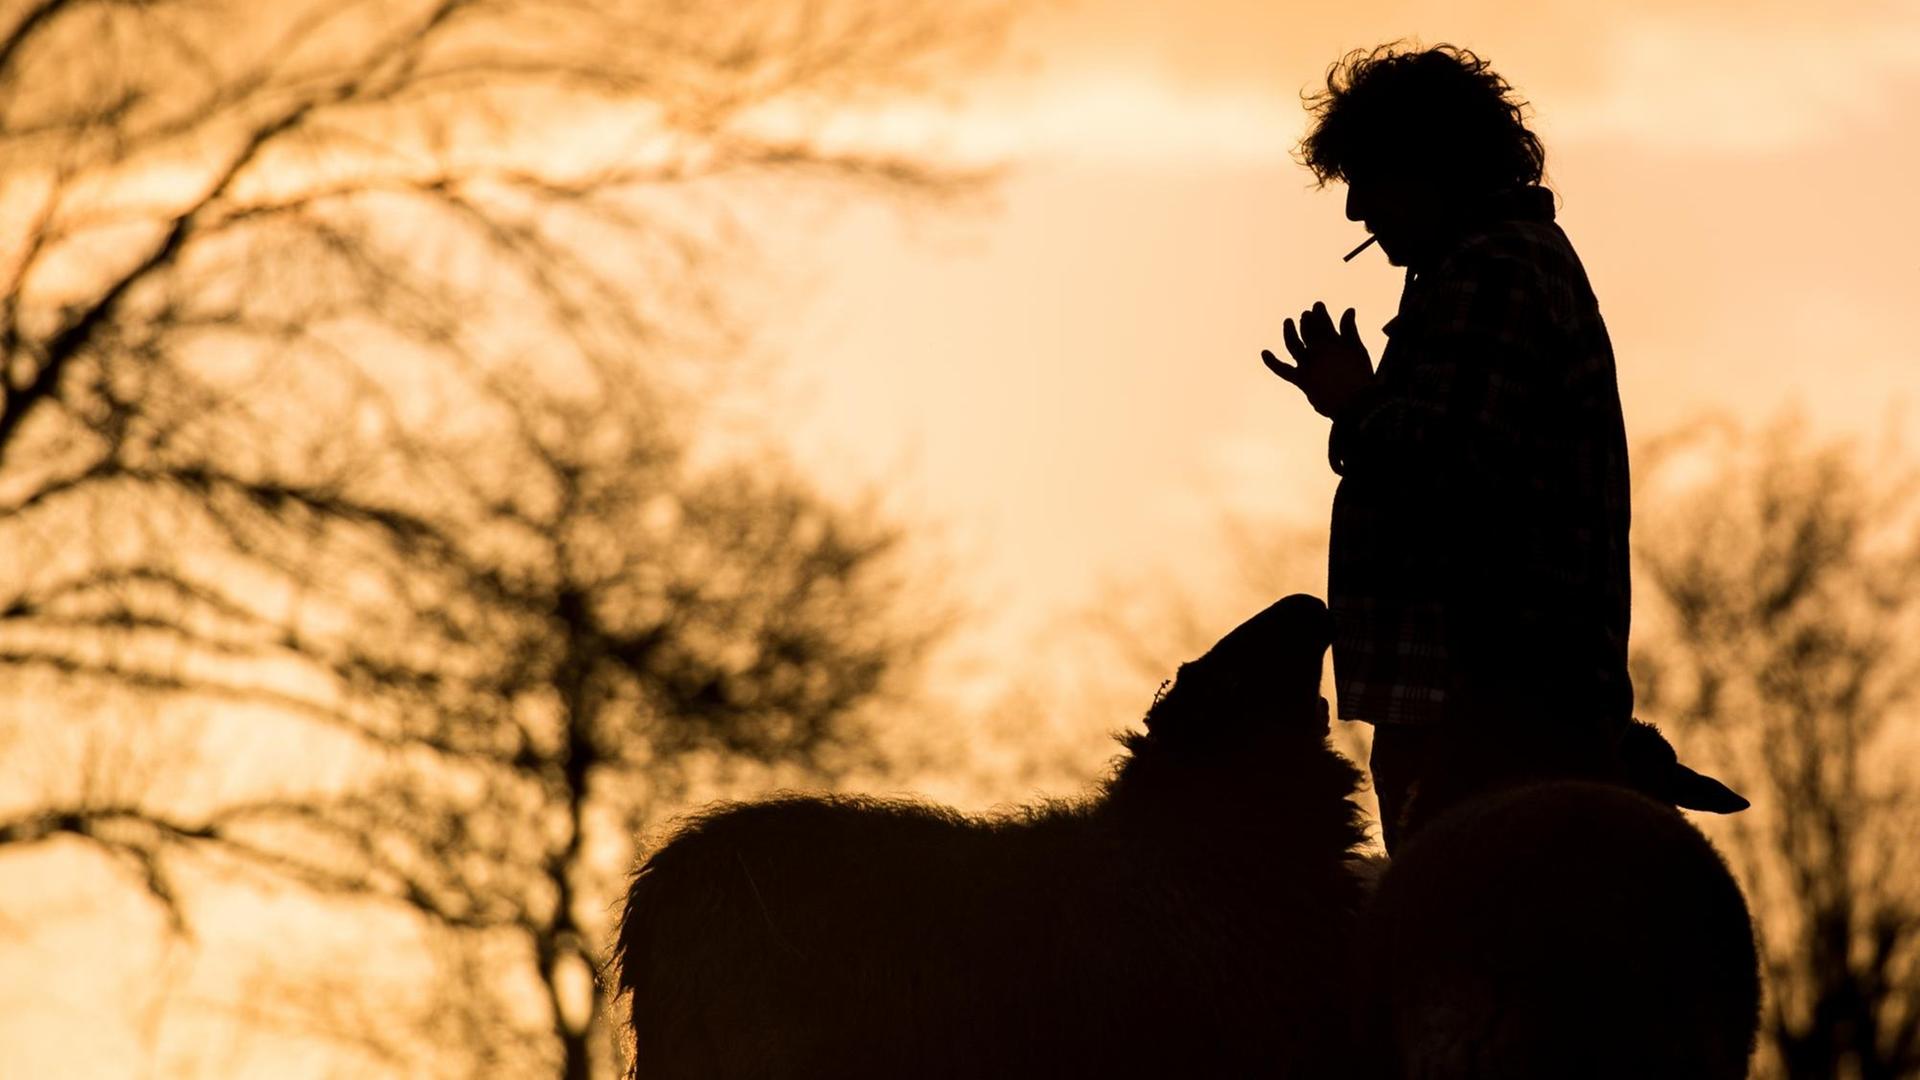 Ein rauchender Mann steht am 01.03.2015 in Auetal (Niedersachsen) während des Sonnenuntergangs neben Schafen auf einer Wiese.